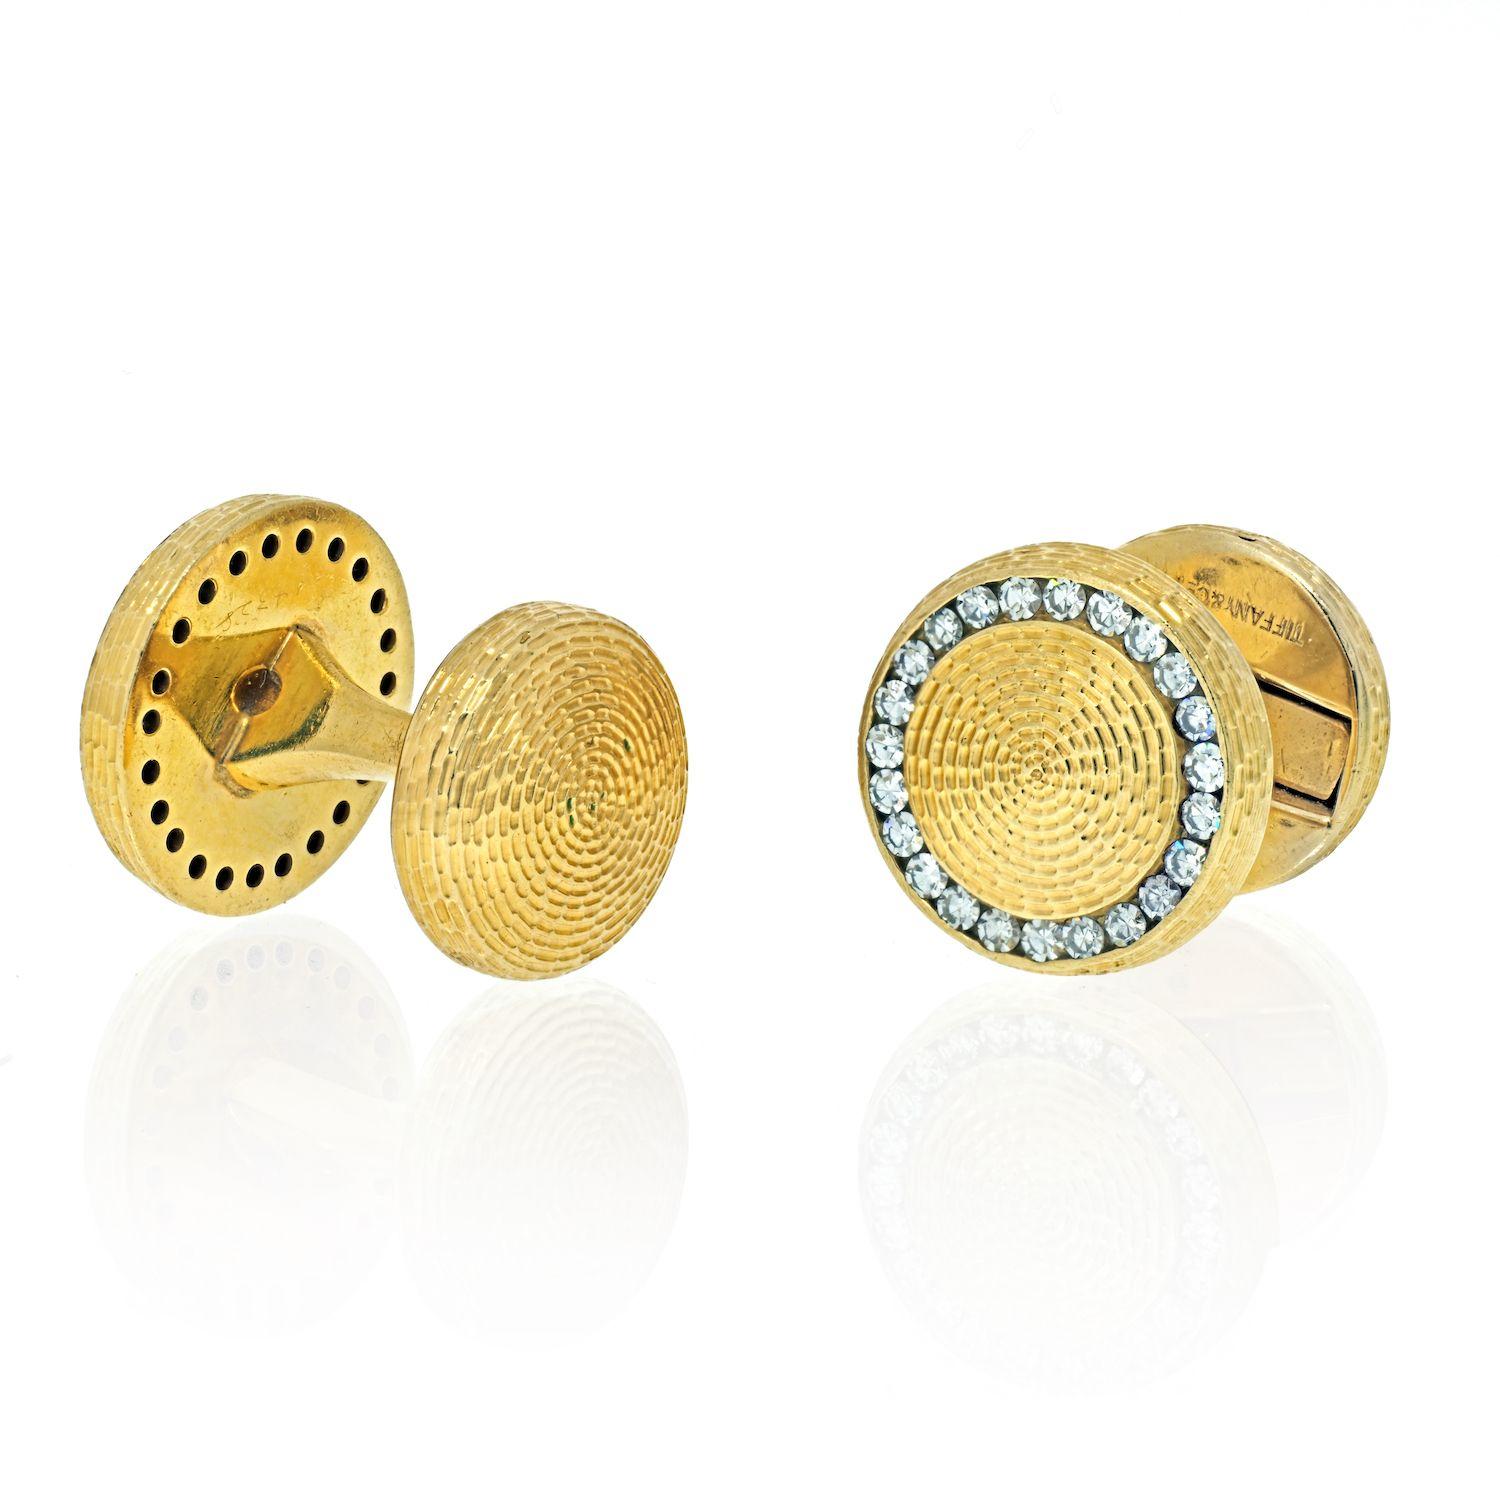 Tiffany & Co. Boutons de manchette en or et diamants. 
Vintage boutons de manchette en or jaune texturé 14K avec diamants Tiffany. Ces boutons de manchette glamour sont sertis de diamants ronds et brillants par l'emblématique Tiffany & Co. dans les